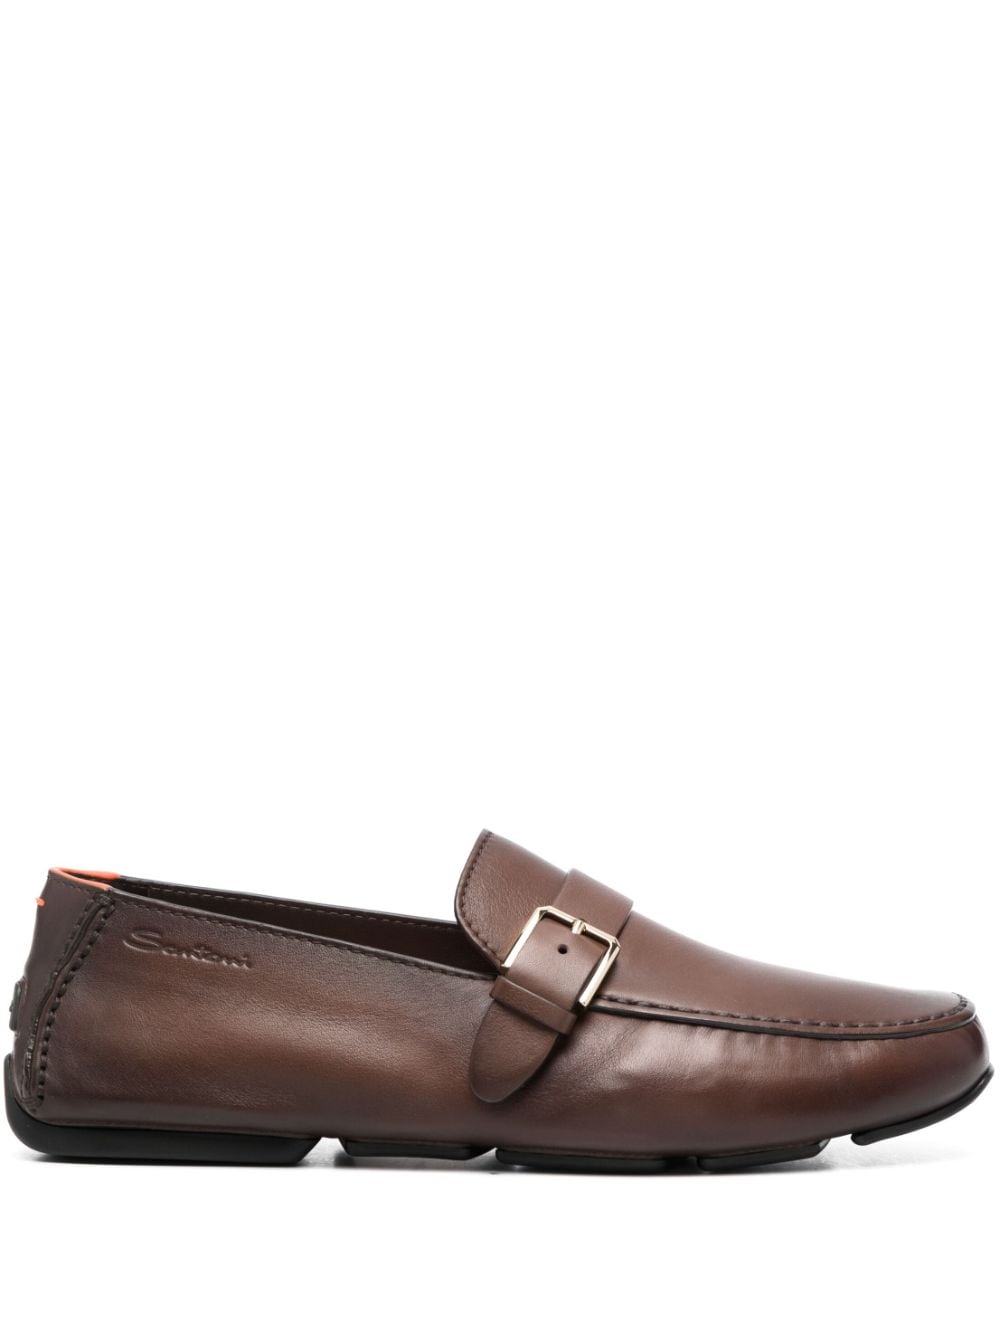 Santoni buckled leather monk shoes - Brown von Santoni